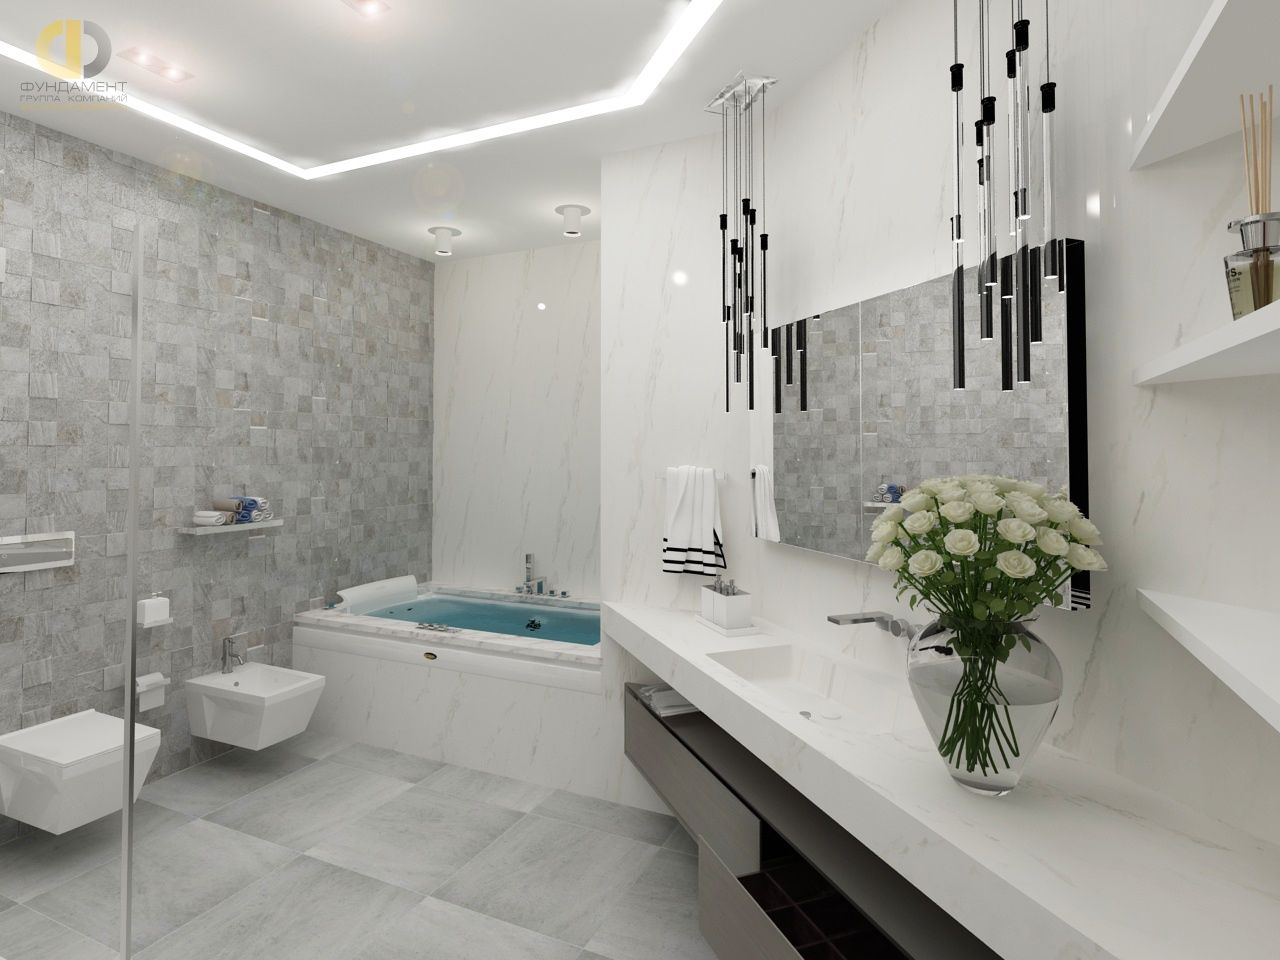 5 важных моментов для правильного подбора сантехники в дизайне интерьера ванной комнаты 